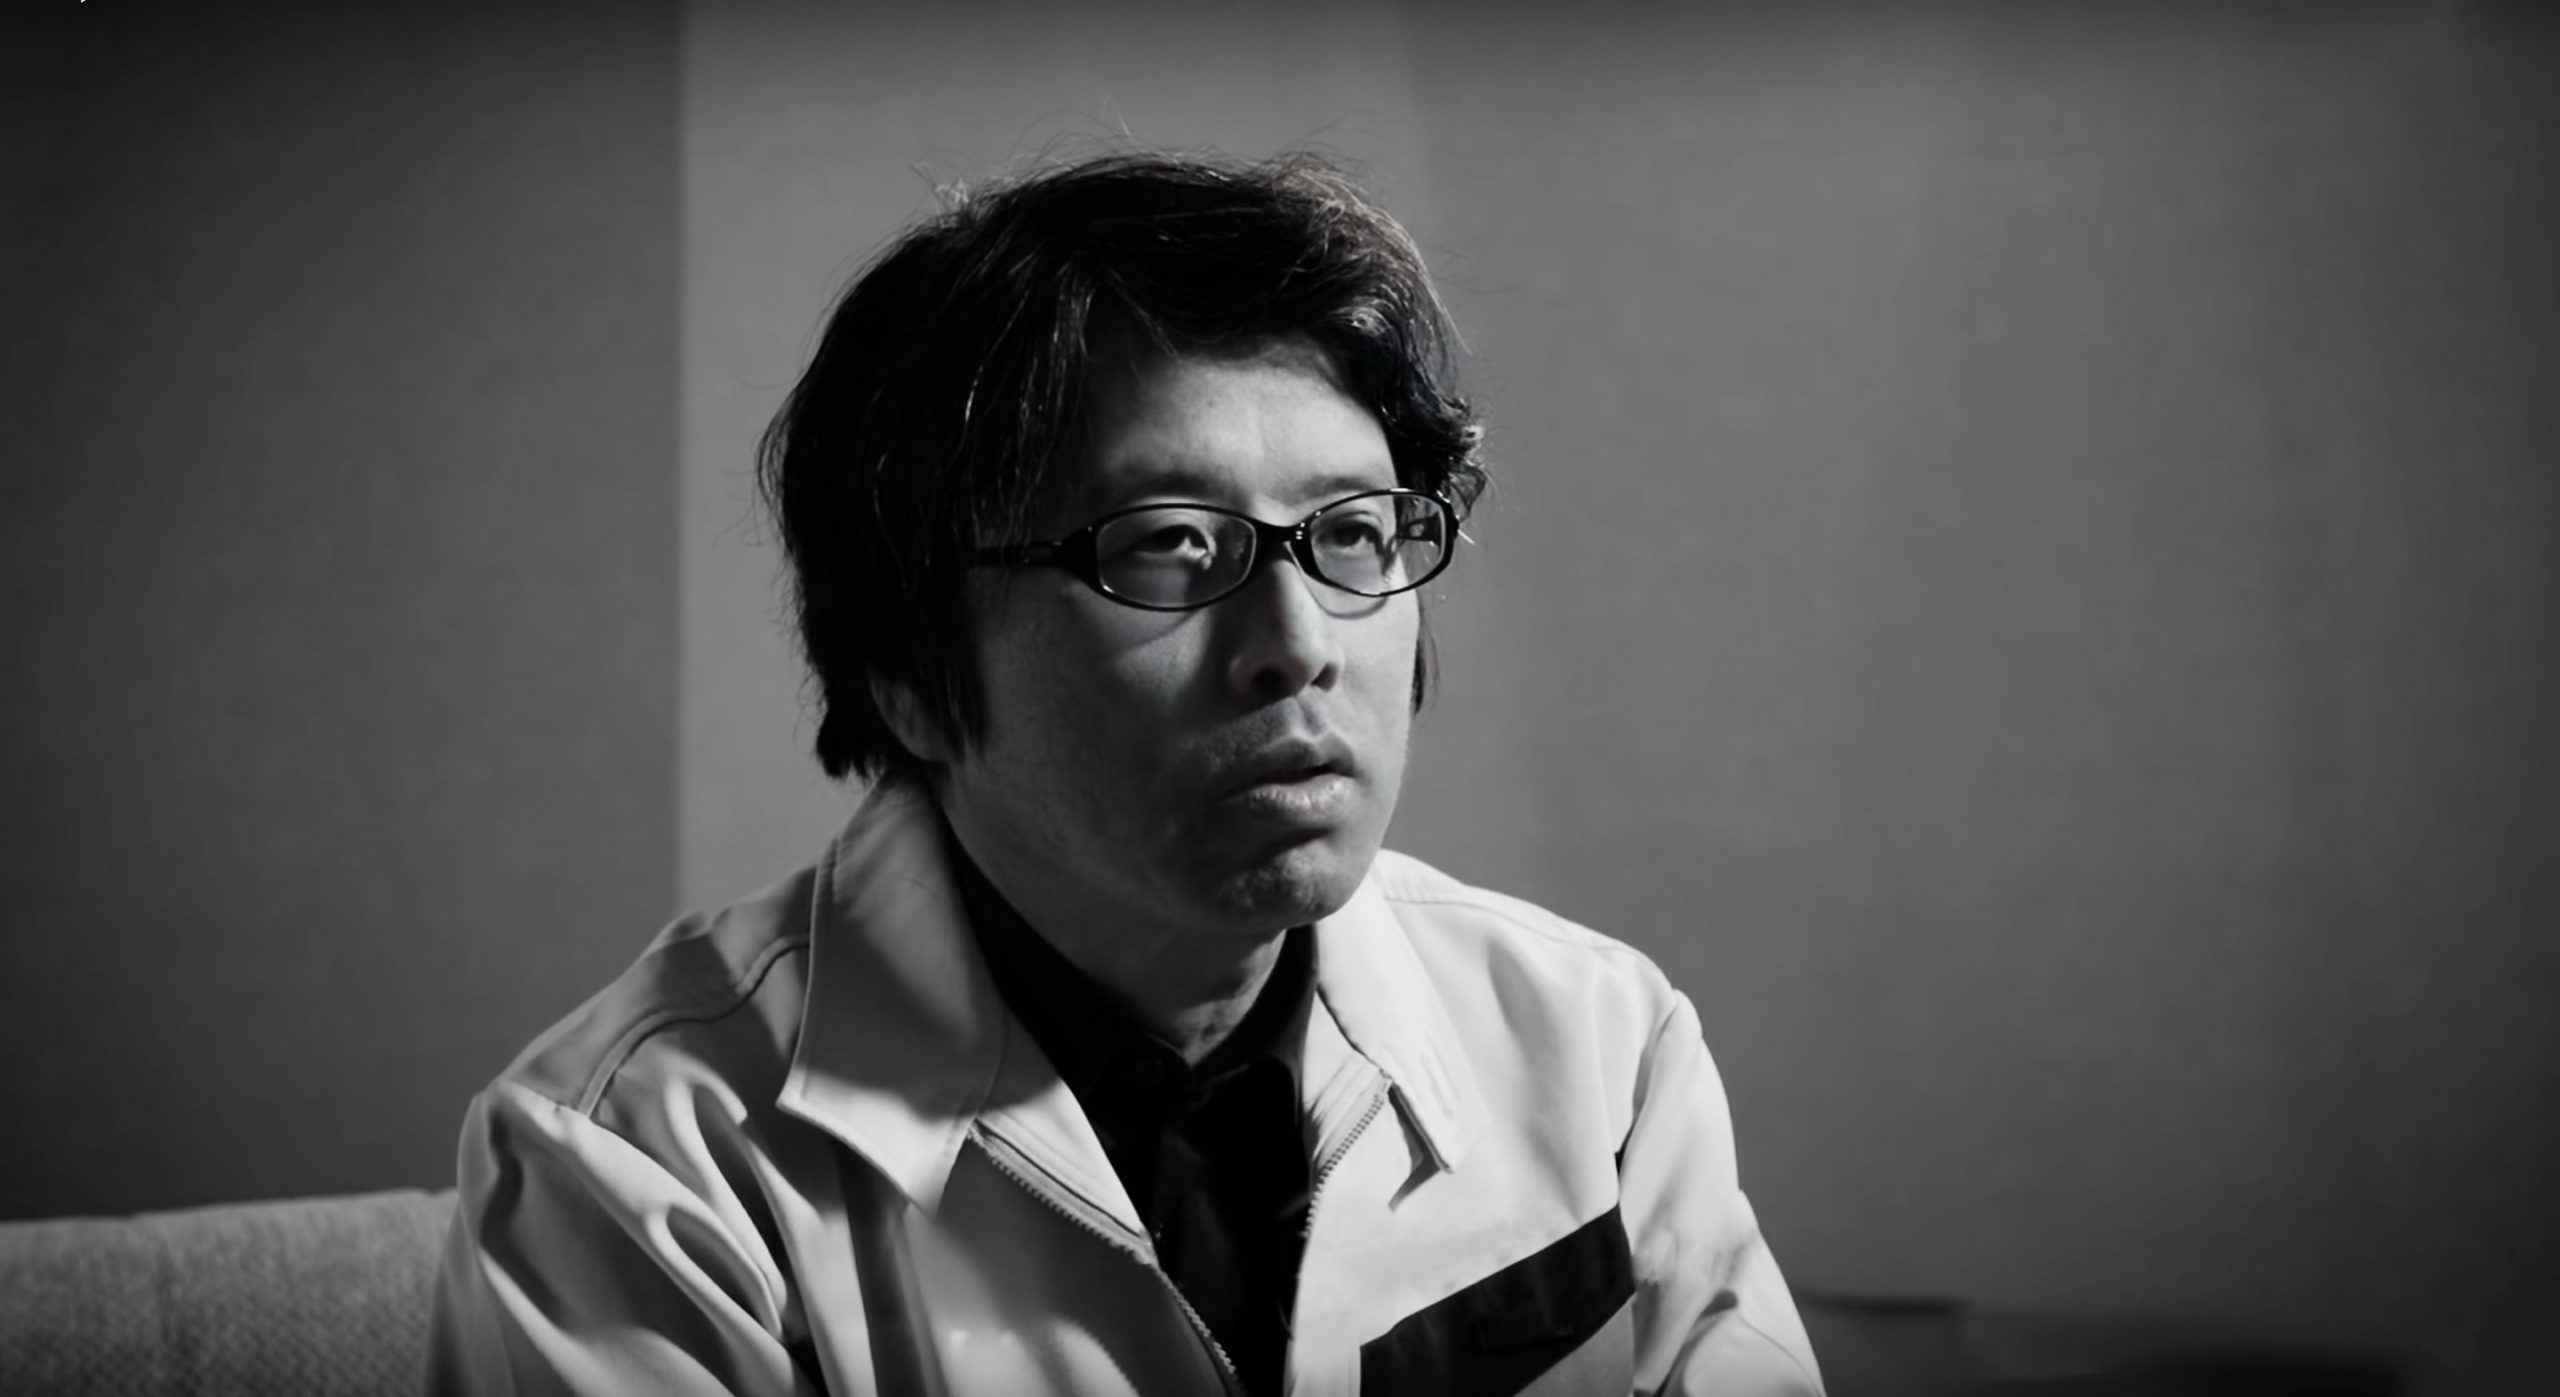 El ingeniero Kazz Takahashi, director del equipo de desarrollo de JD-800